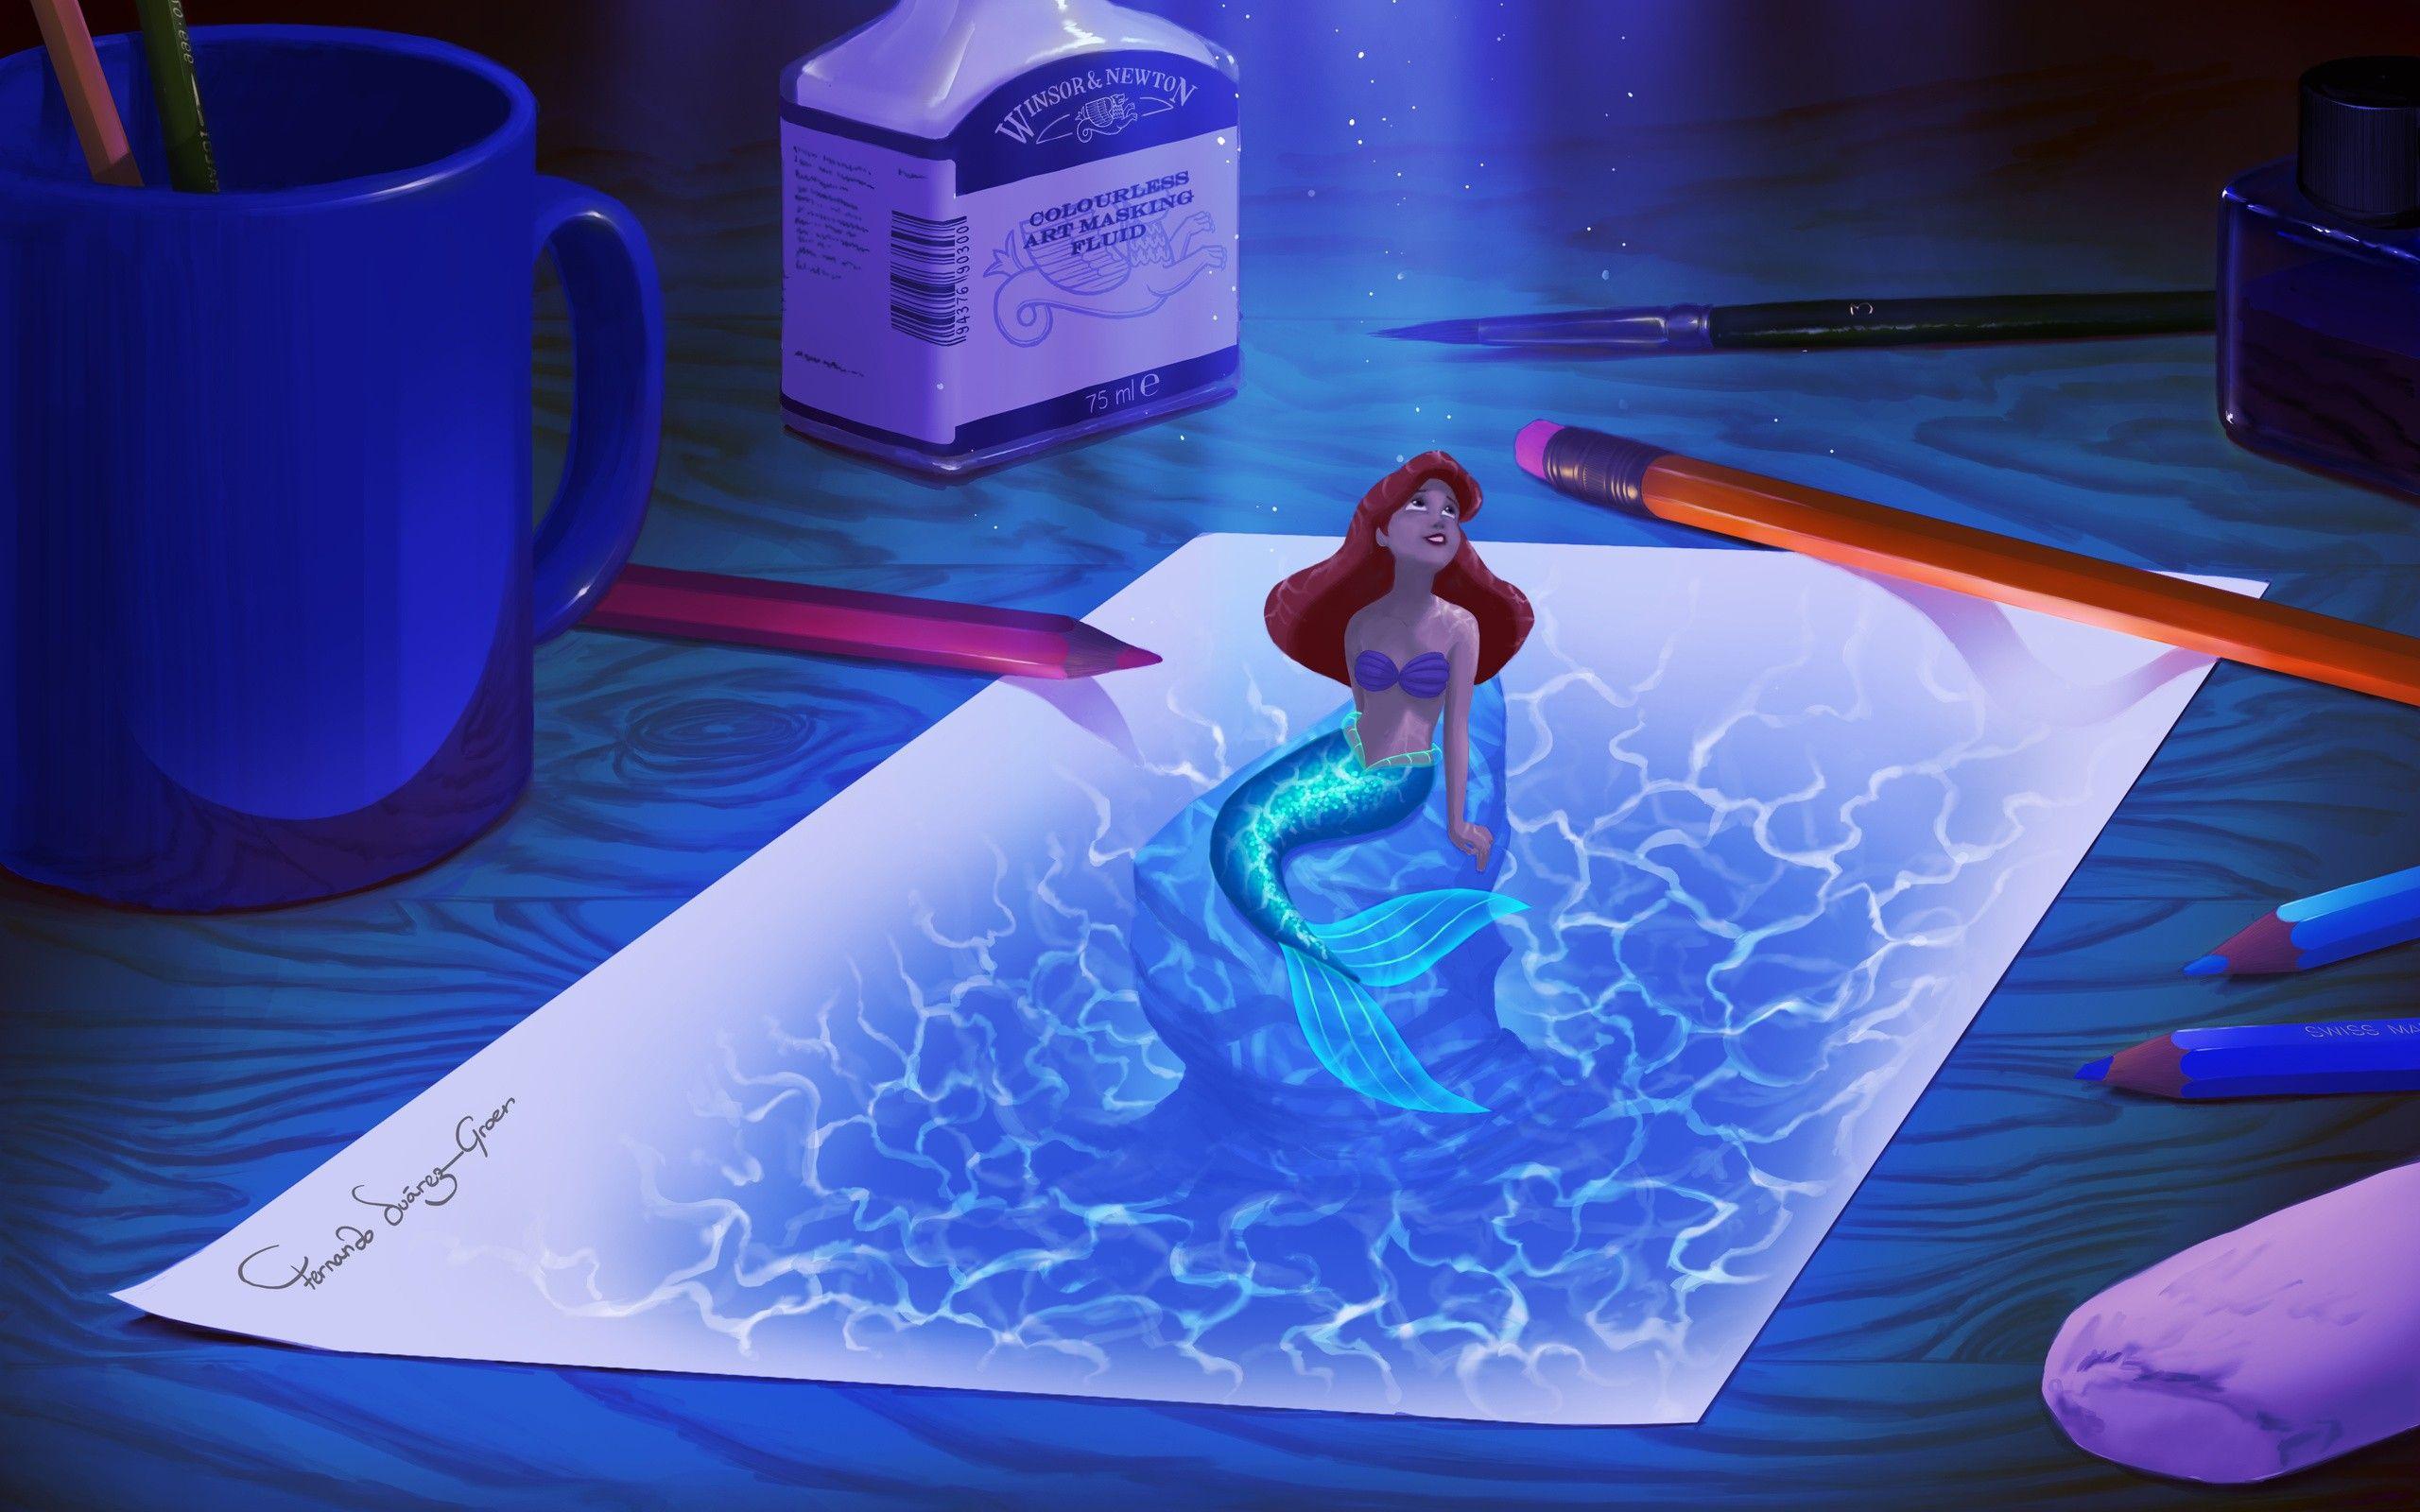 Drawn mermaid desktop wallpaper and in color drawn mermaid